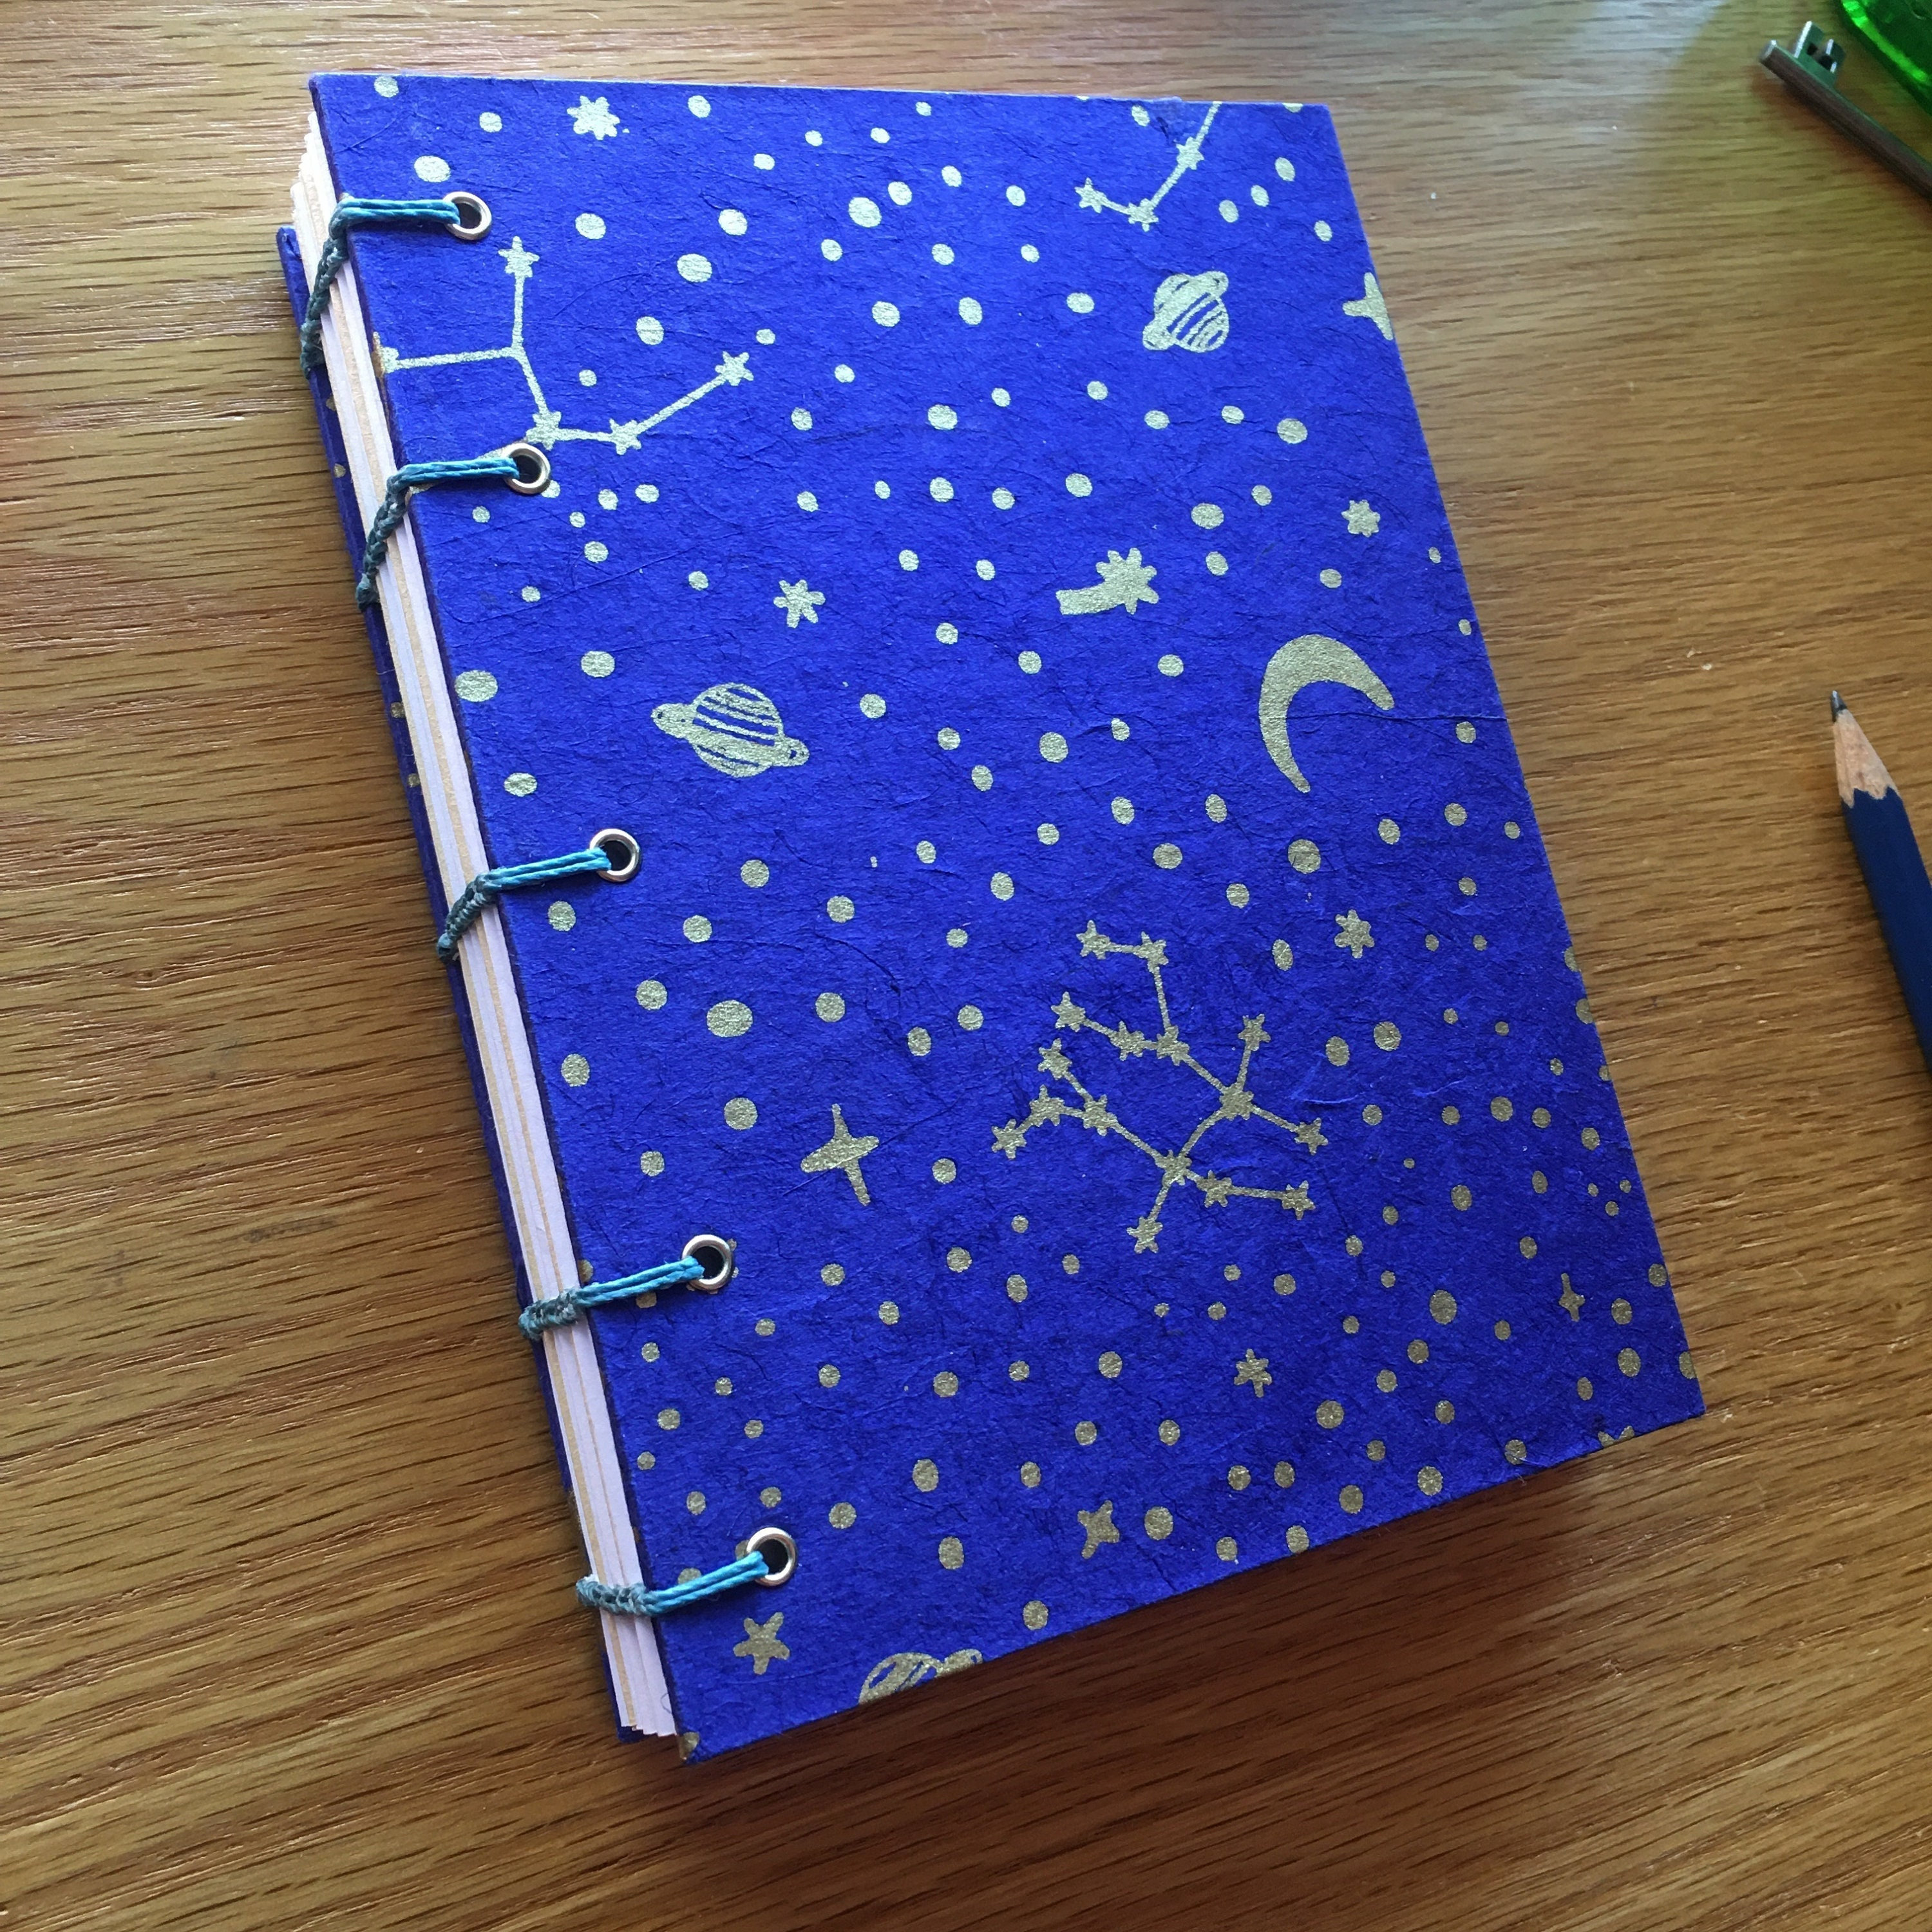 Black Sketchbook With Black Paper. Hardcover Lunar Notebook